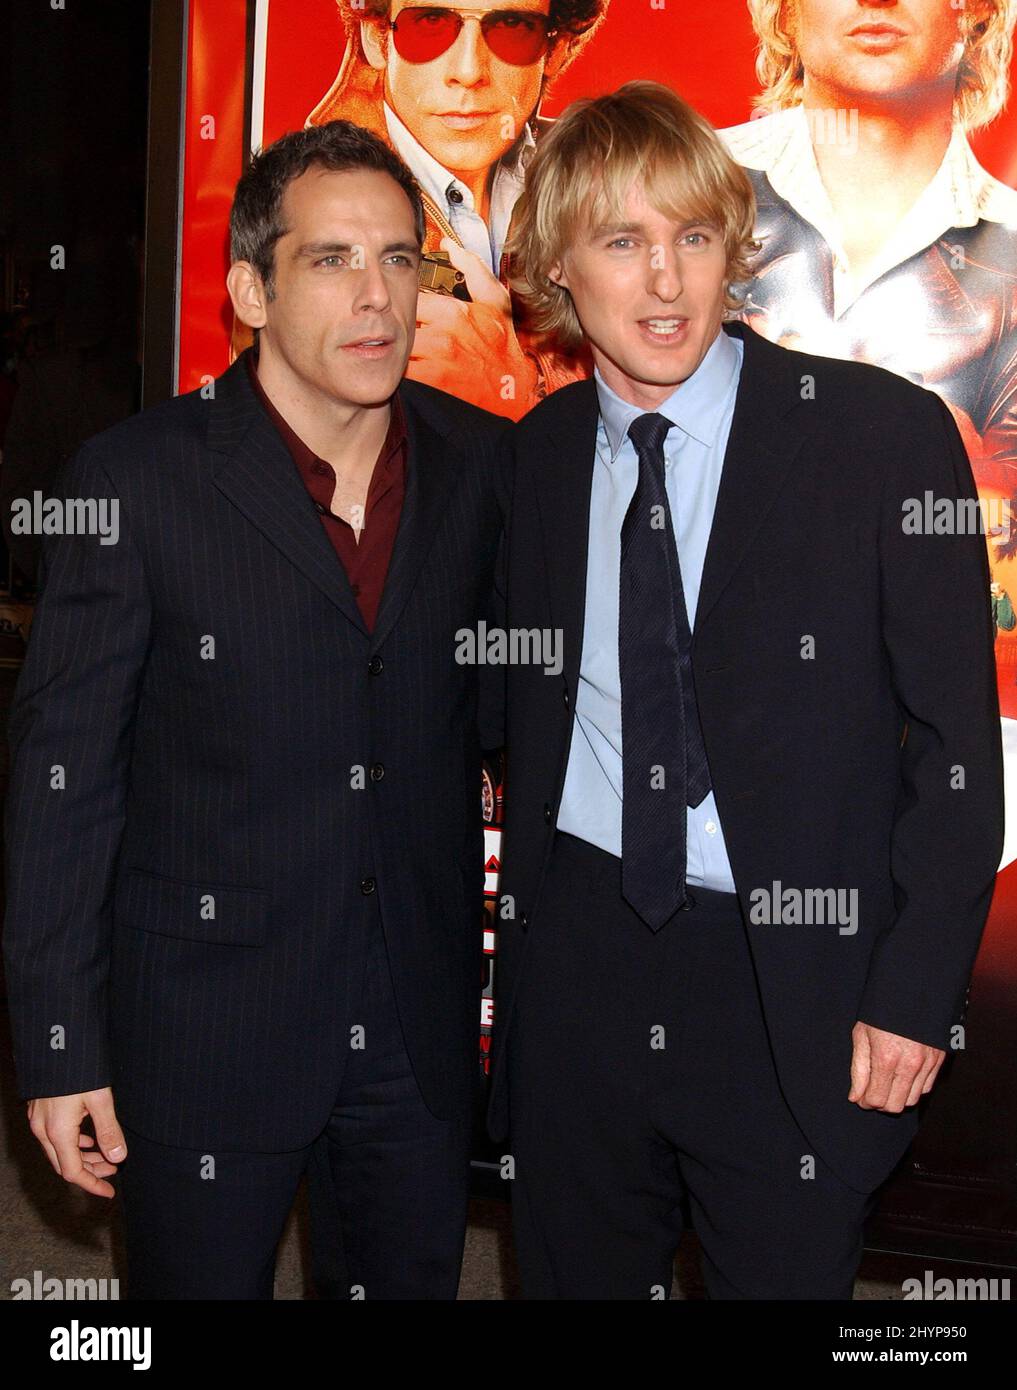 Ben Stiller & Owen Wilson nehmen an der Premiere von „Starsky & Hutch“ in Westwood, Kalifornien, Teil. Bild: UK Press Stockfoto